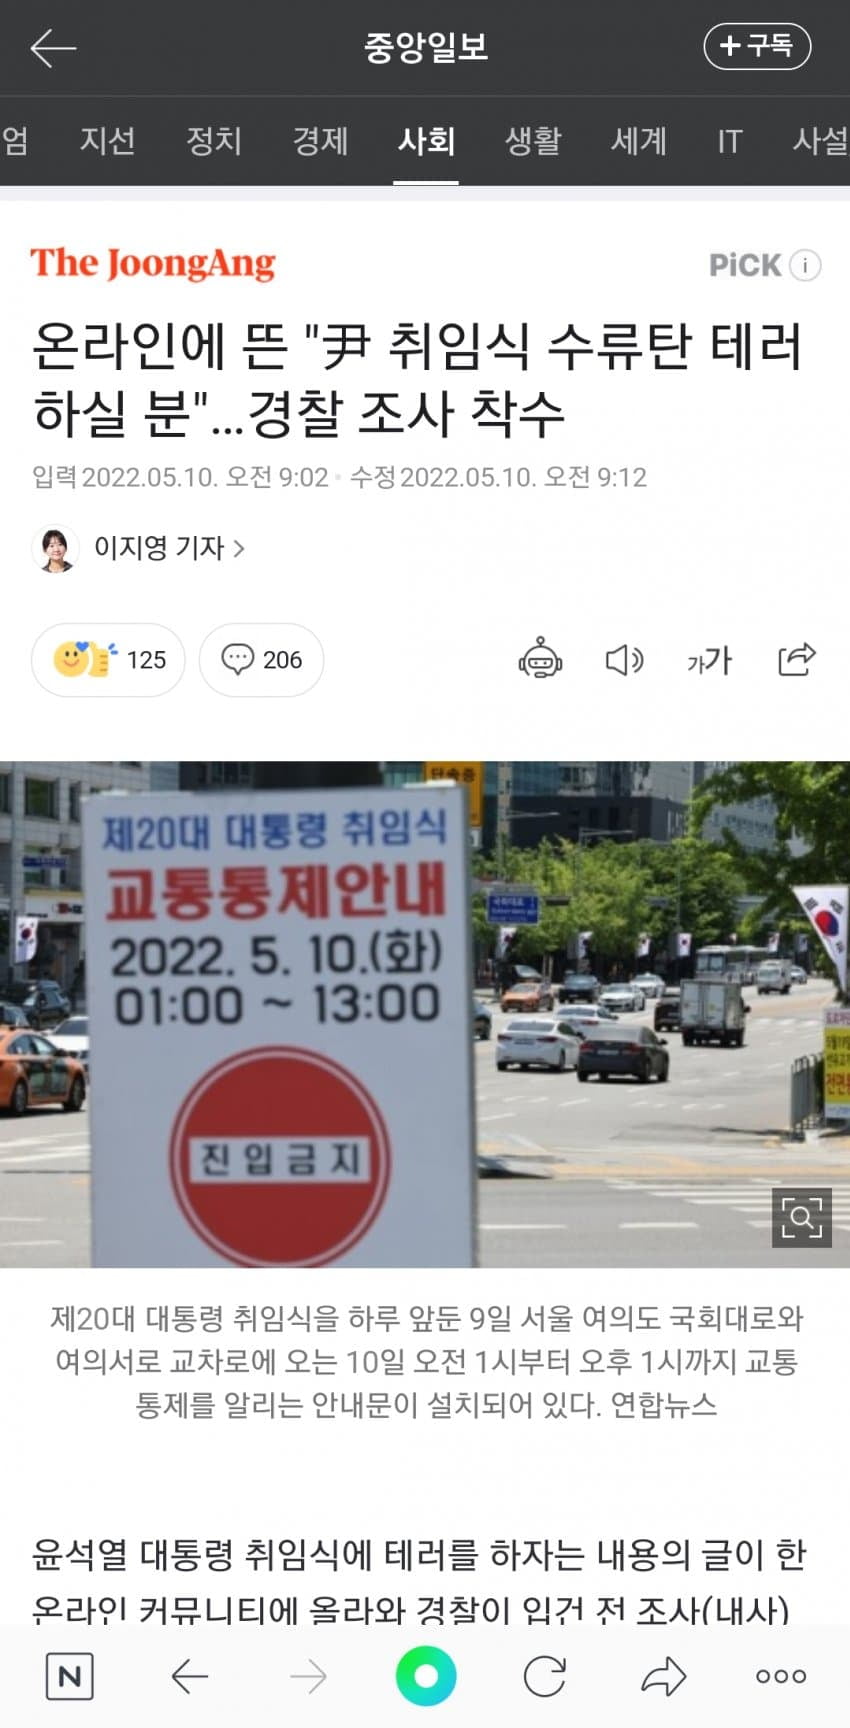 수류탄 테러 글 작성 용의자 경찰 수사 착수 ㄷㄷ